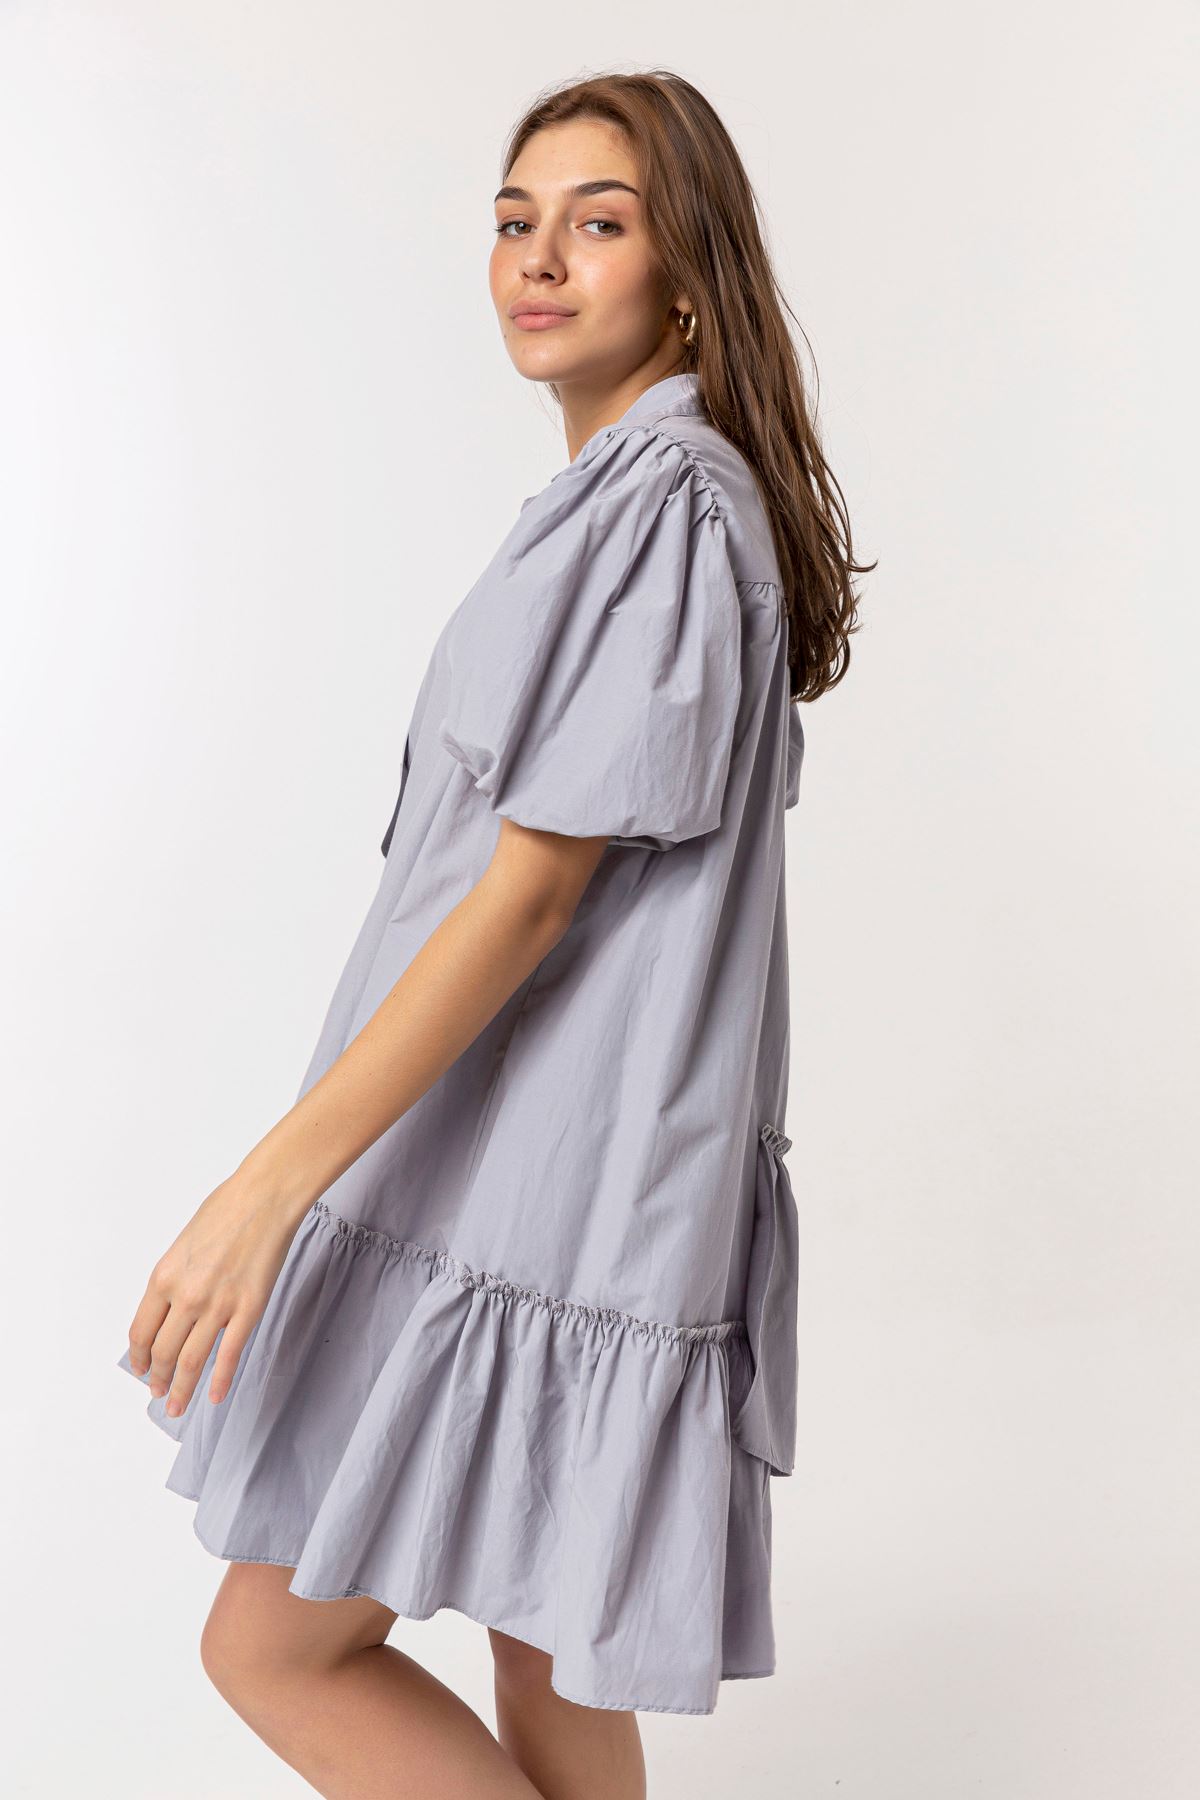 Soft Fabric Short Sleeve Shirt Collar Oversize Full Fit Women Dress - Grey